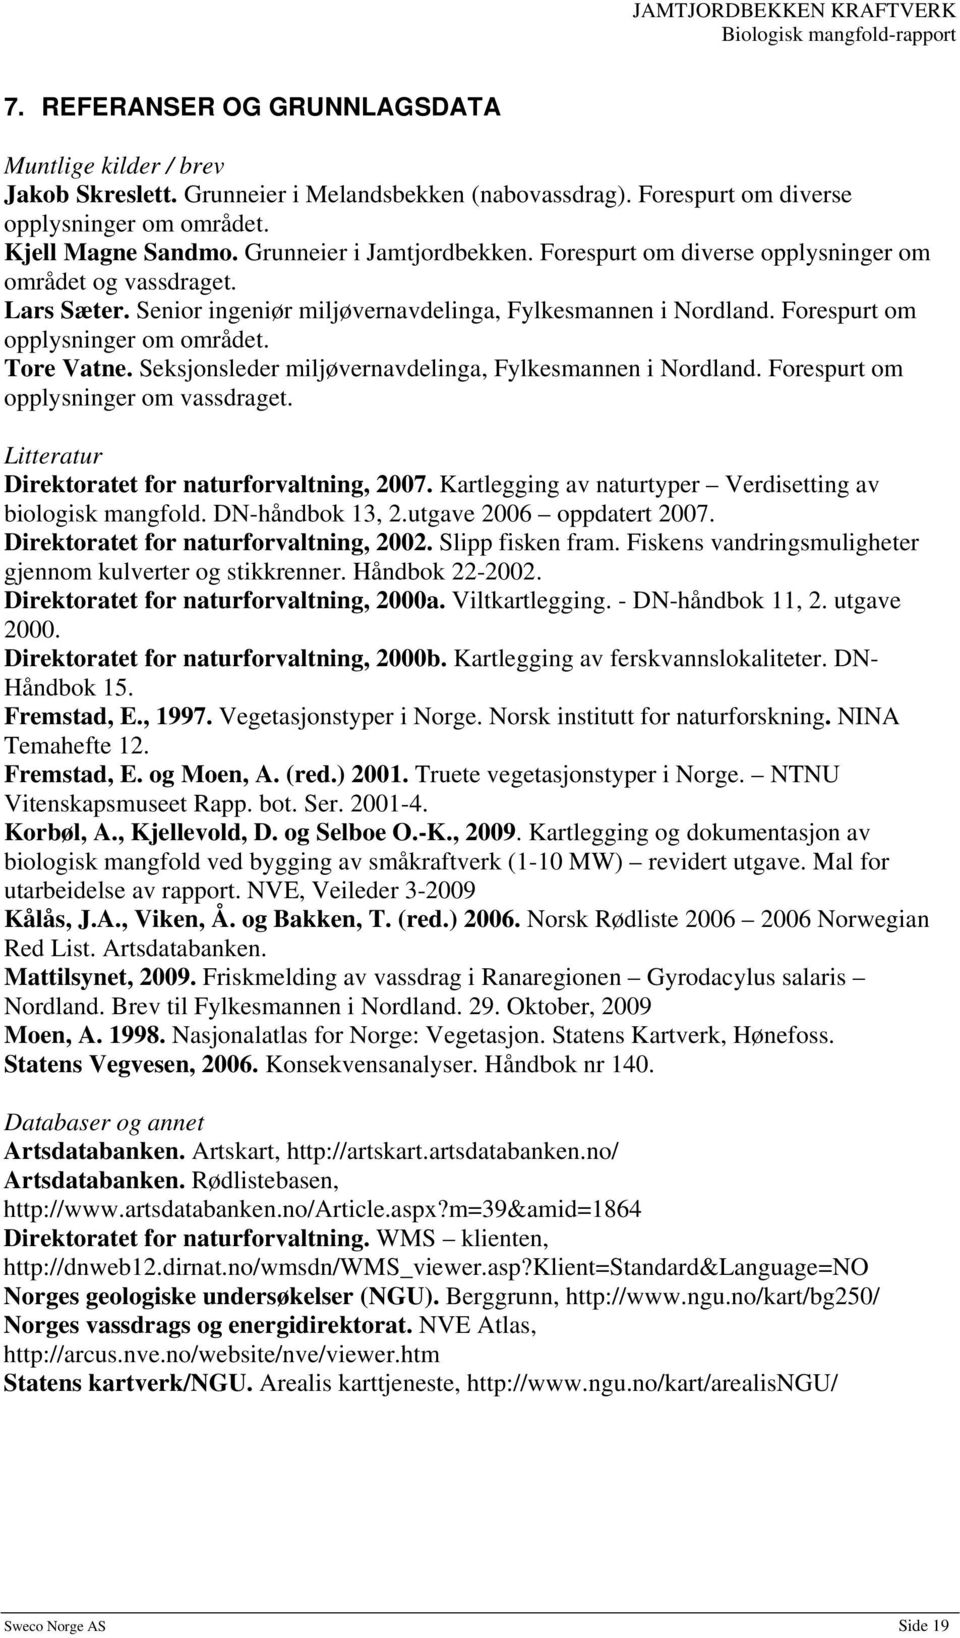 Tore Vatne. Seksjonsleder miljøvernavdelinga, Fylkesmannen i Nordland. Forespurt om opplysninger om vassdraget. Litteratur Direktoratet for naturforvaltning, 2007.